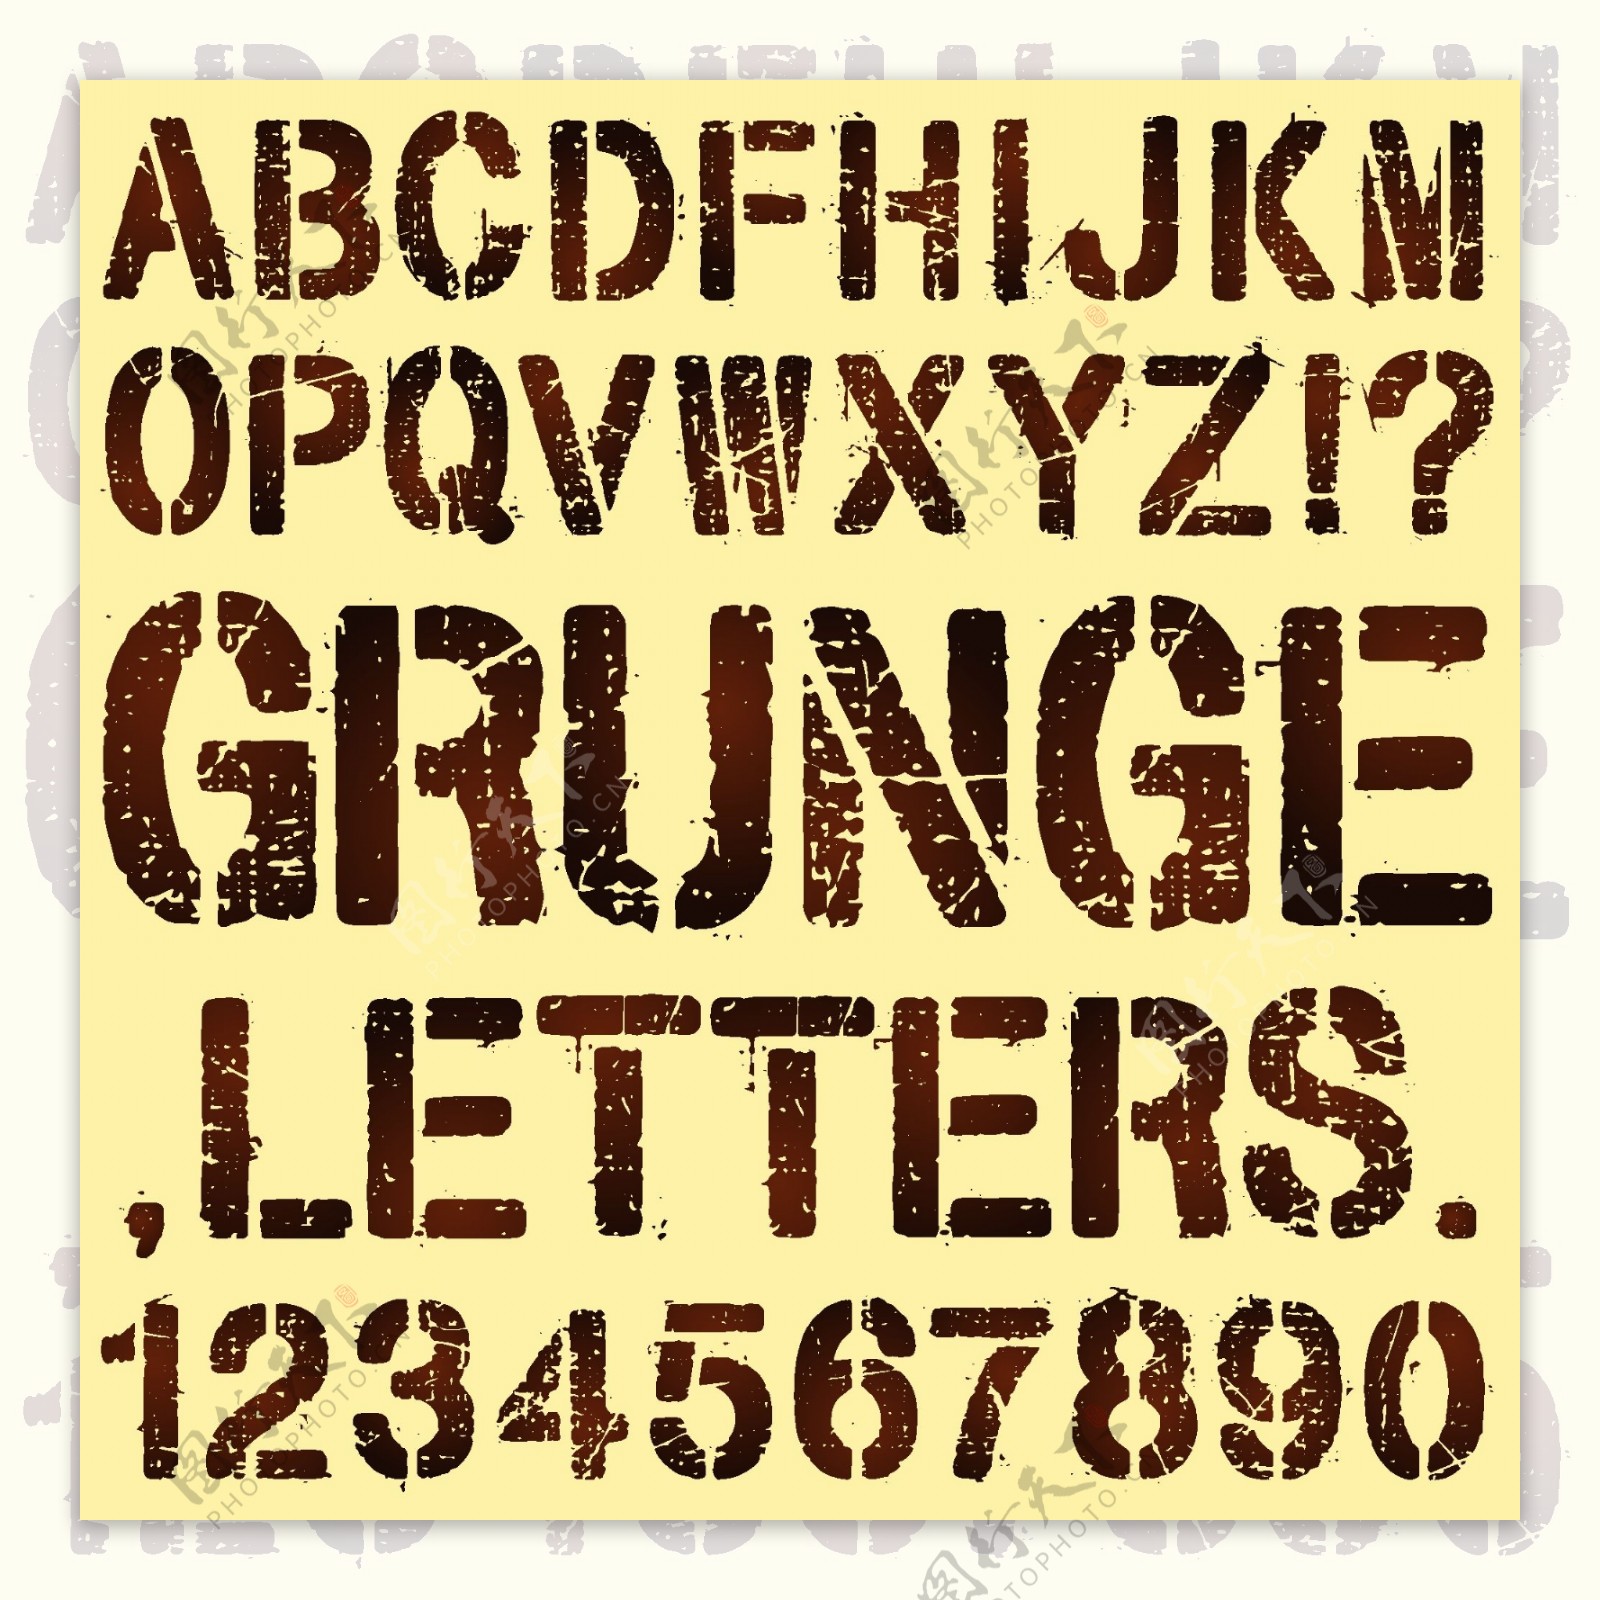 破旧的印刷字母和数字